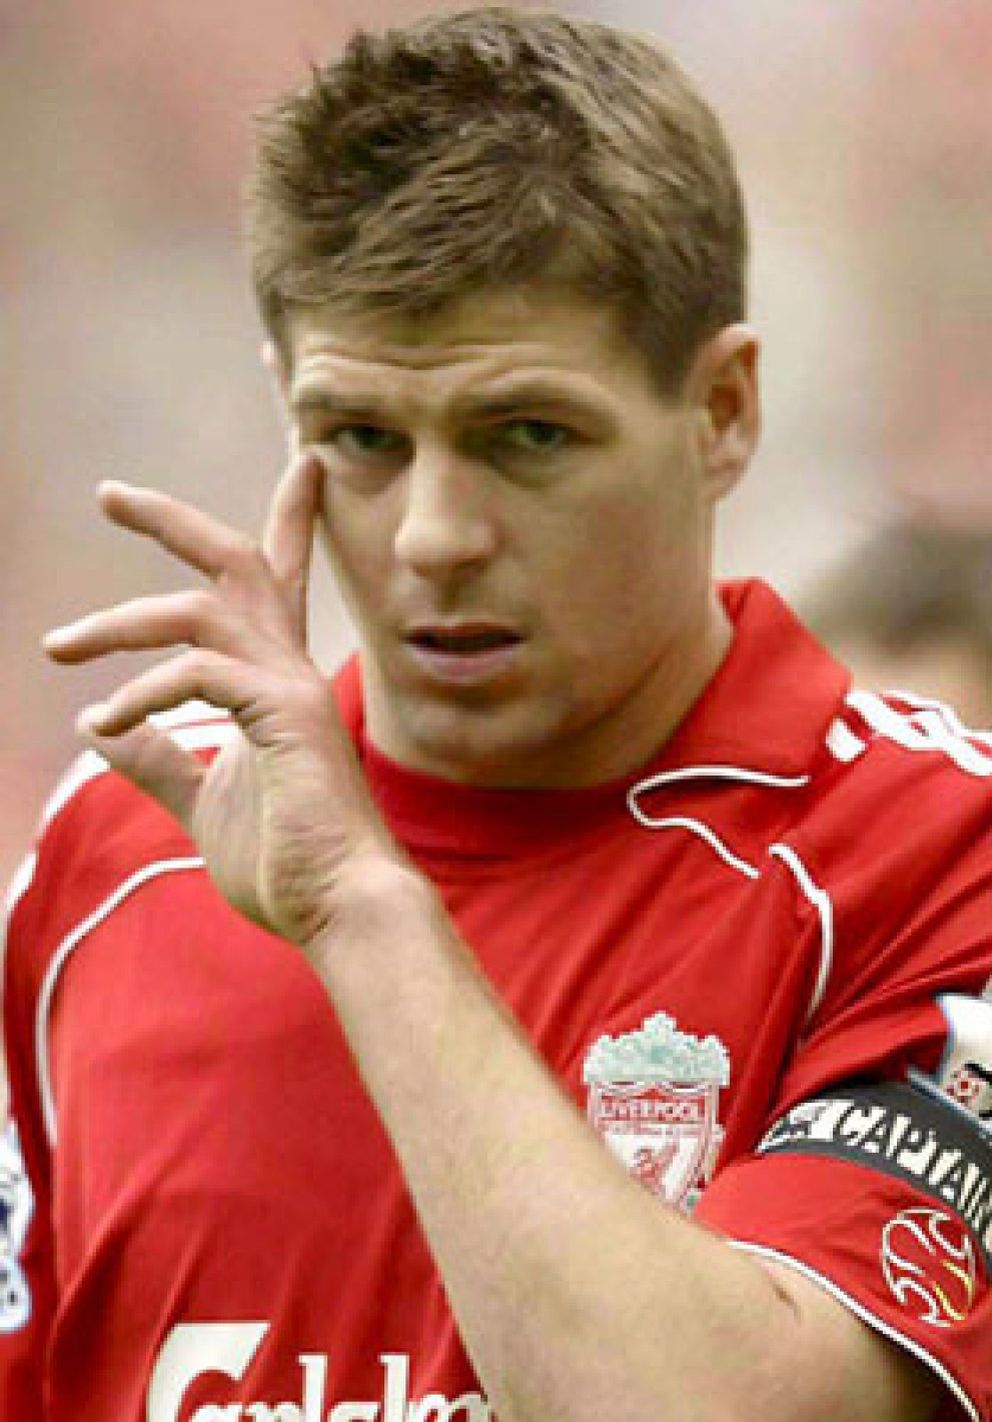 Foto: Gerrard es acusado de agresión y puesto en libertad bajo fianza tras la reyerta